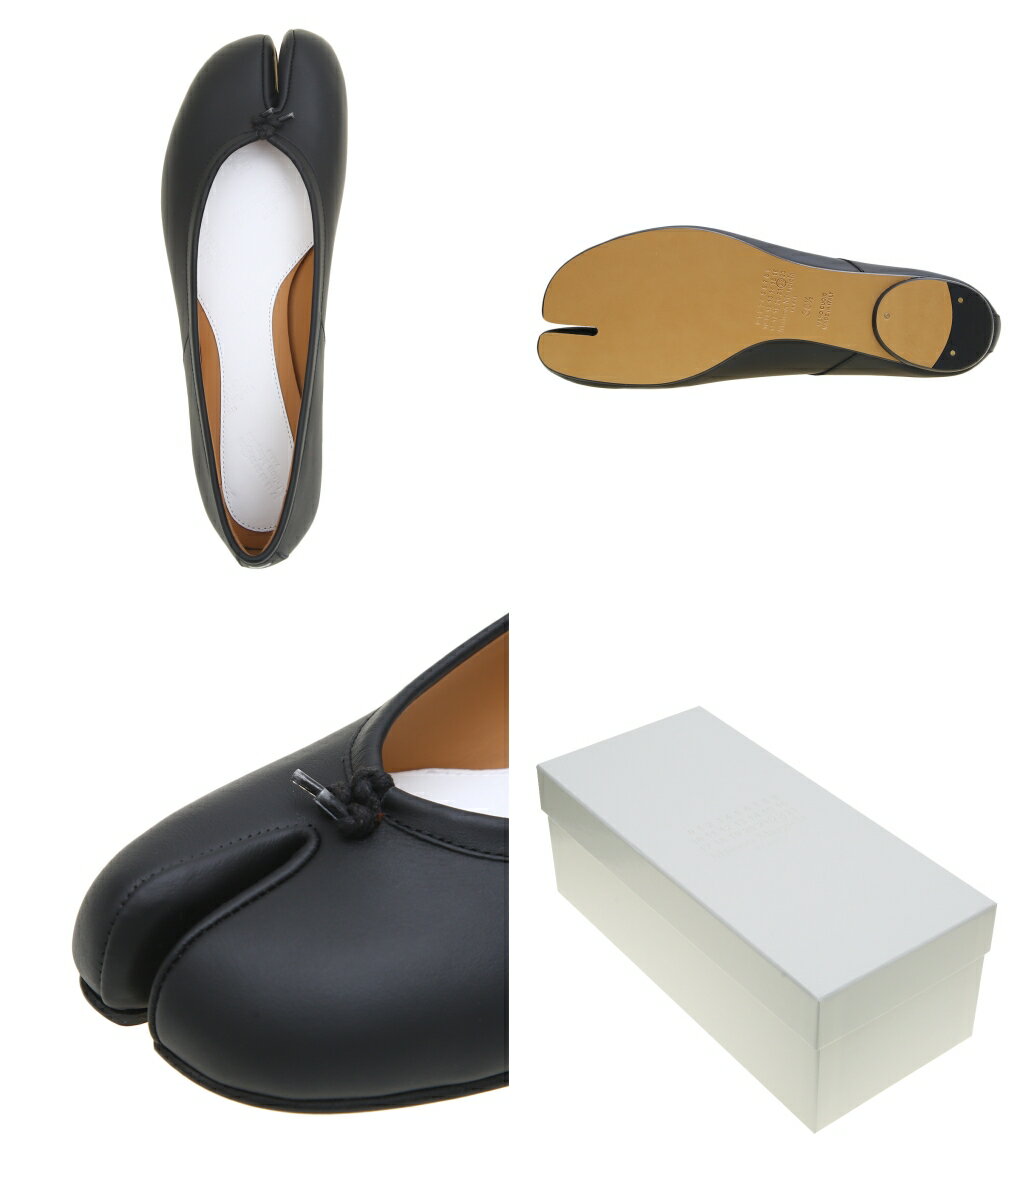 【送料無料】Maison Margiela / メゾン マルジェラ : 【レディース】TABI BALLET SHOES / サイズ22〜25cm : タビ バレエ シューズ パンプス ローヒール レザー 足袋 牛革 本革 靴 : S58WZ0042-PR516-T8013【ANN】